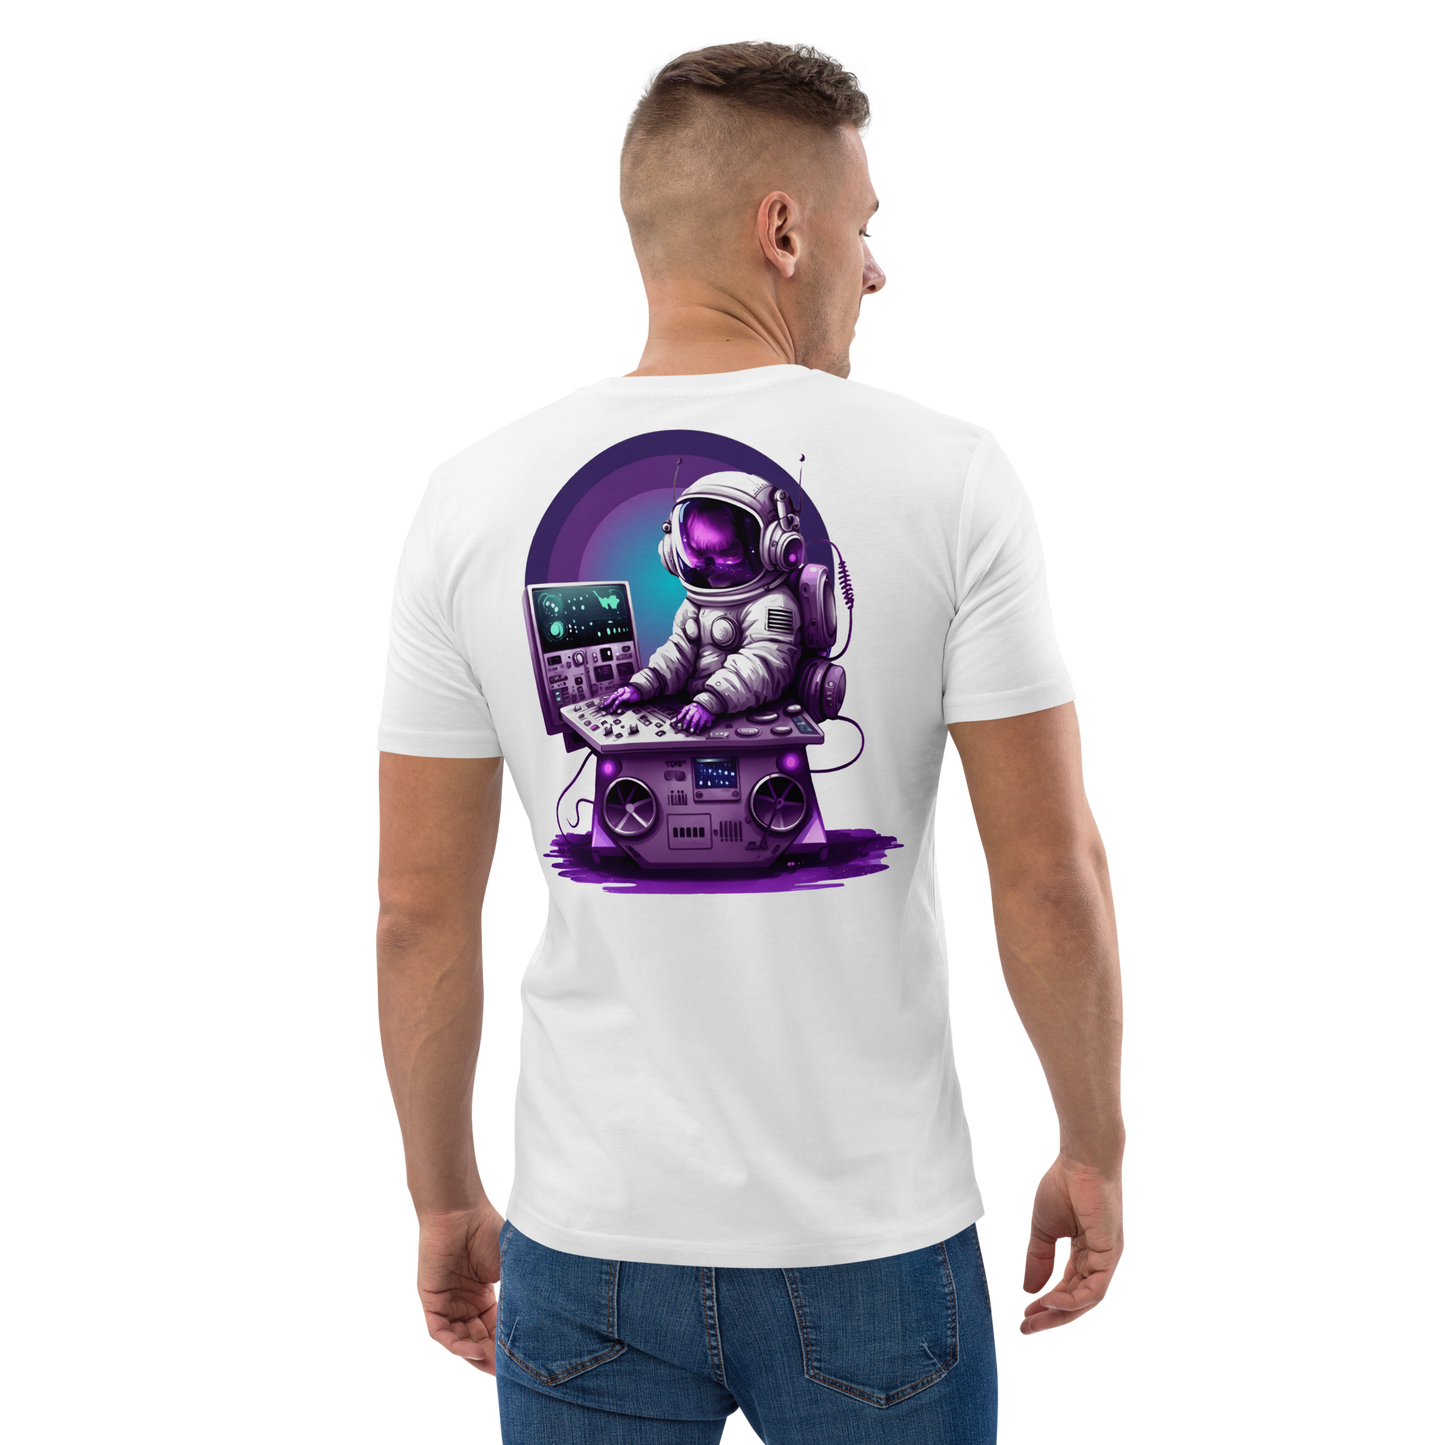 T-Shirt - Space V1.1 - White - Premium